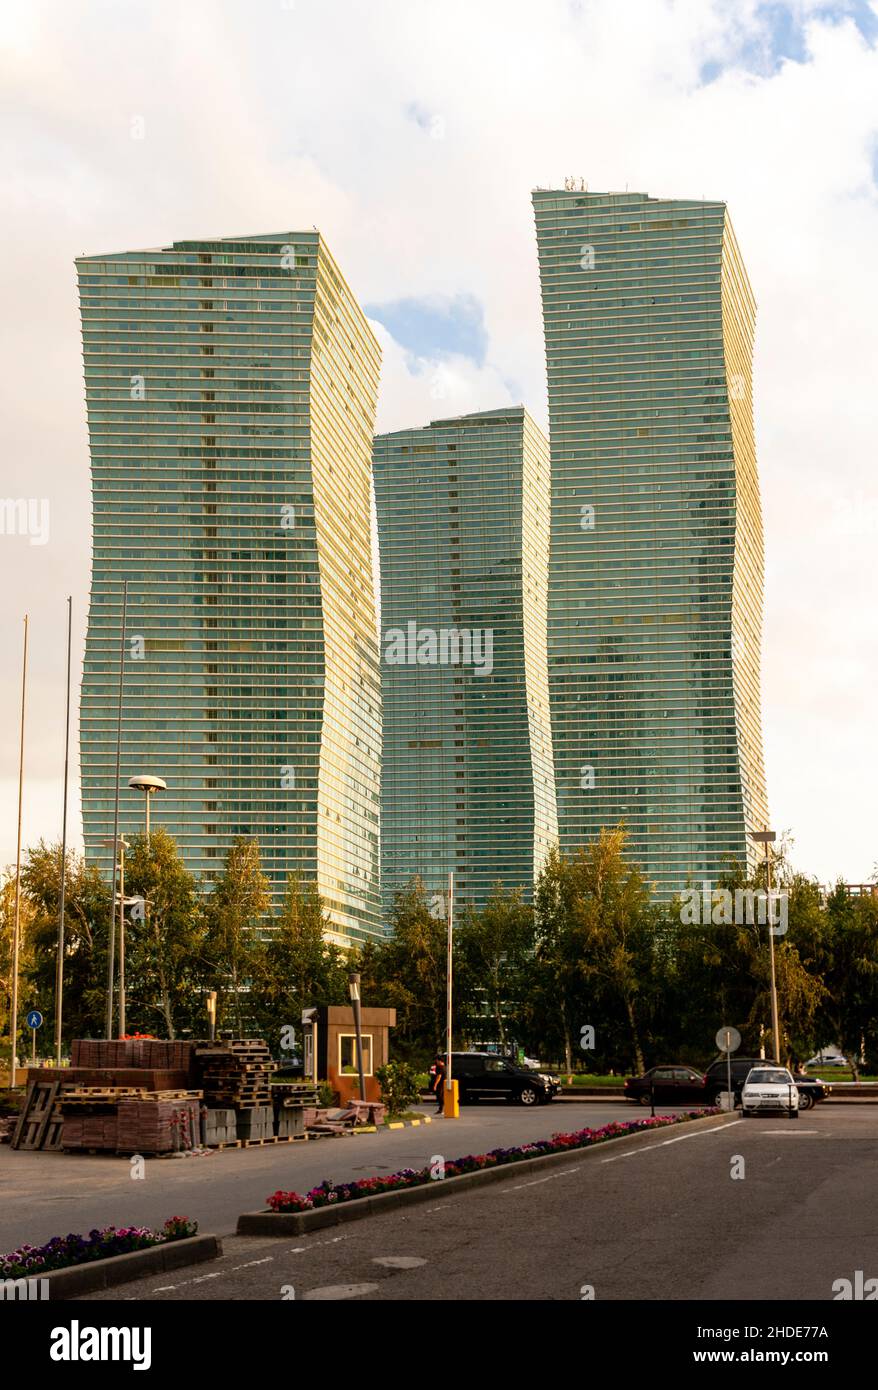 Emerald Towers Immobilien moderner Komplex, entworfen vom Architekten Roy Varacalli, Astana, nur-Sultan, Kasachstan, Zentralasien Stockfoto